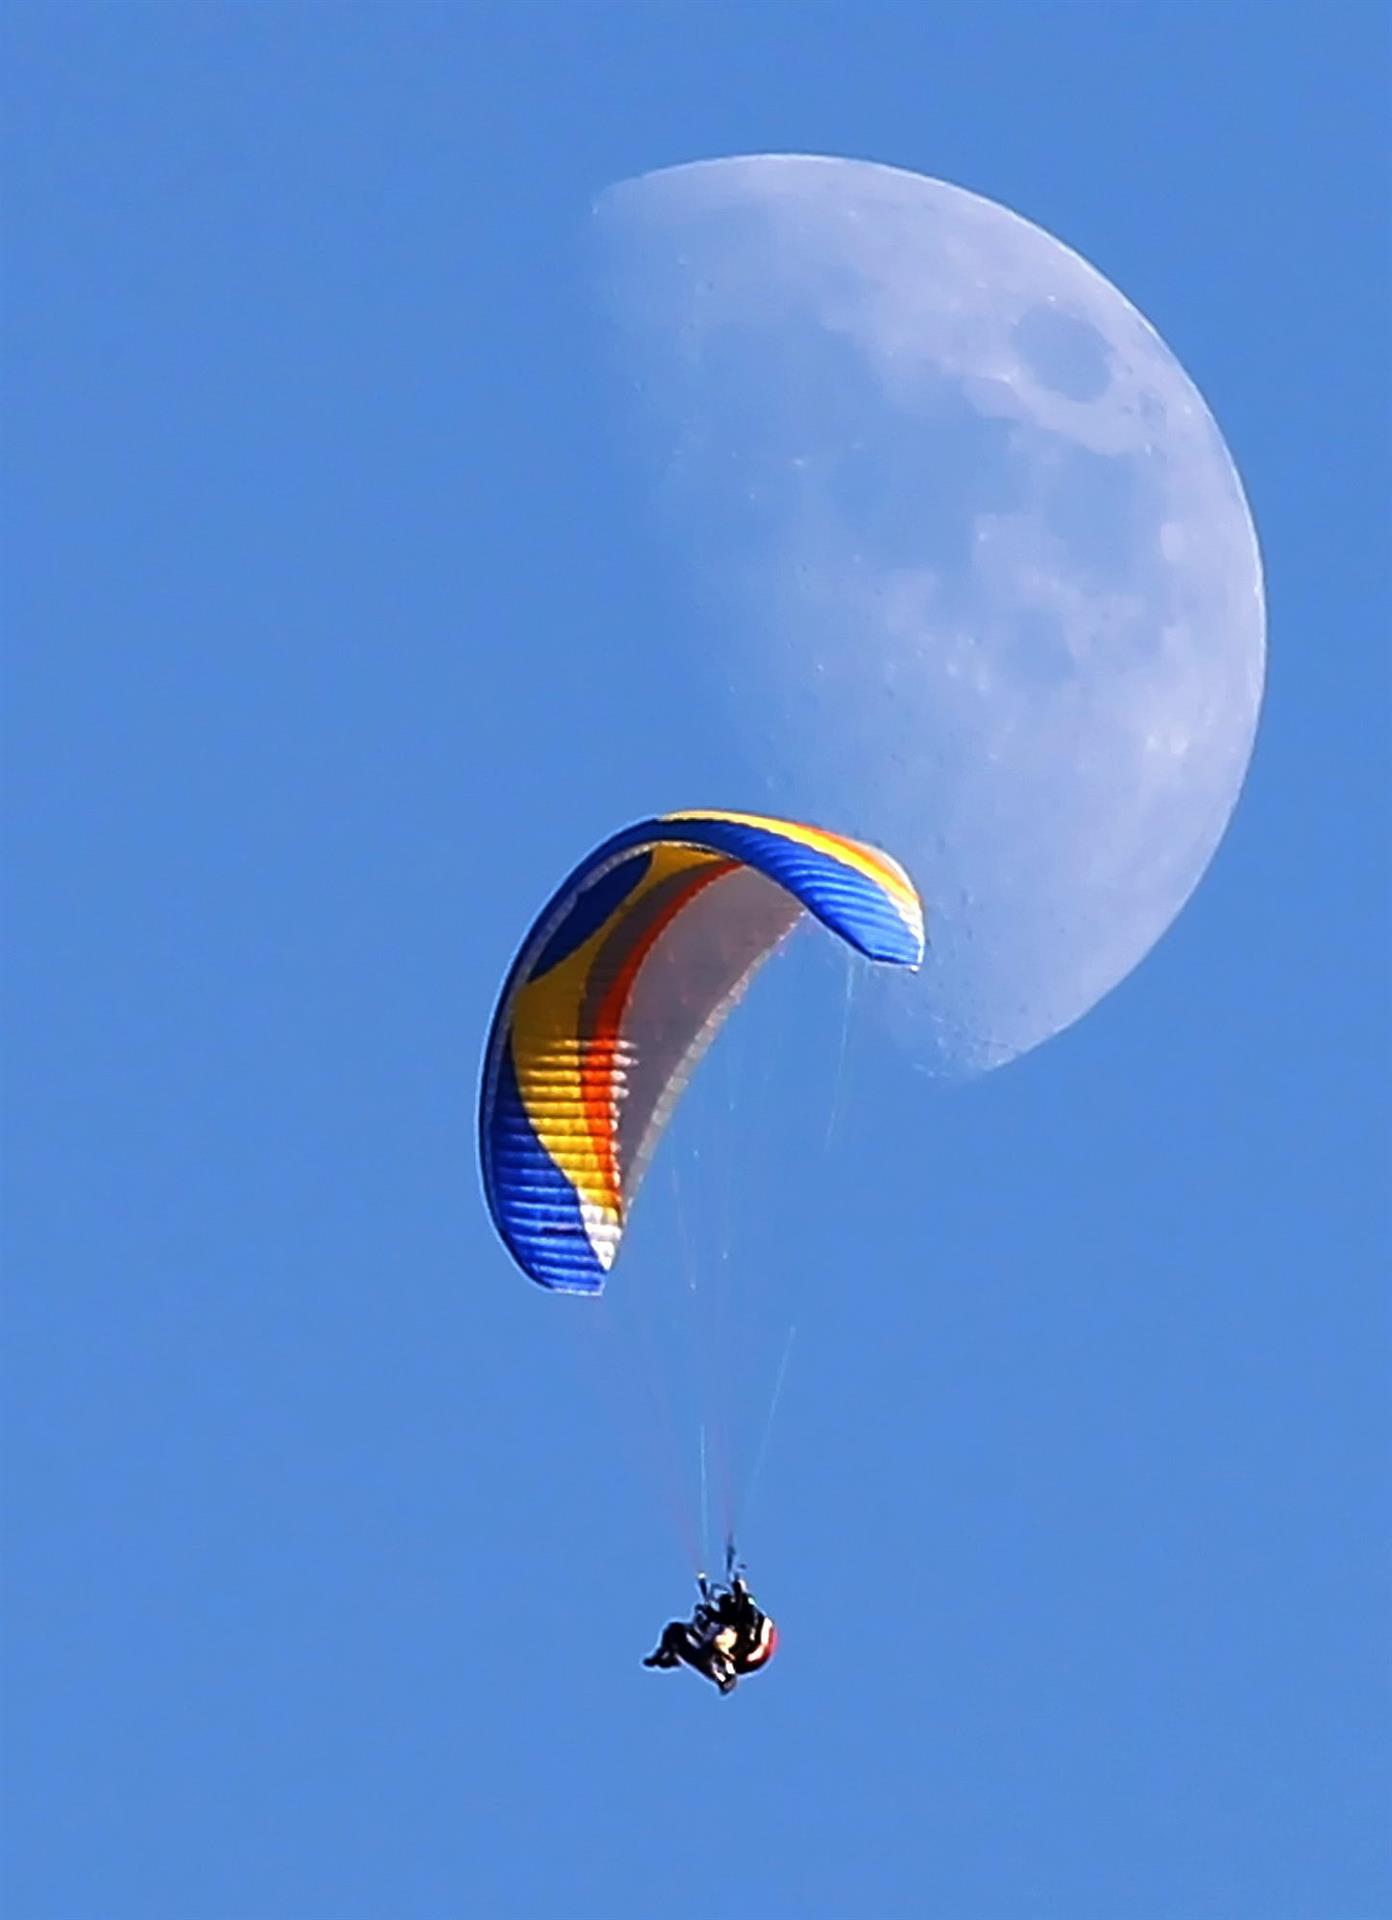 Vista de un parapente delante de la luna. Imagen de archivo. EFE/George Frey
